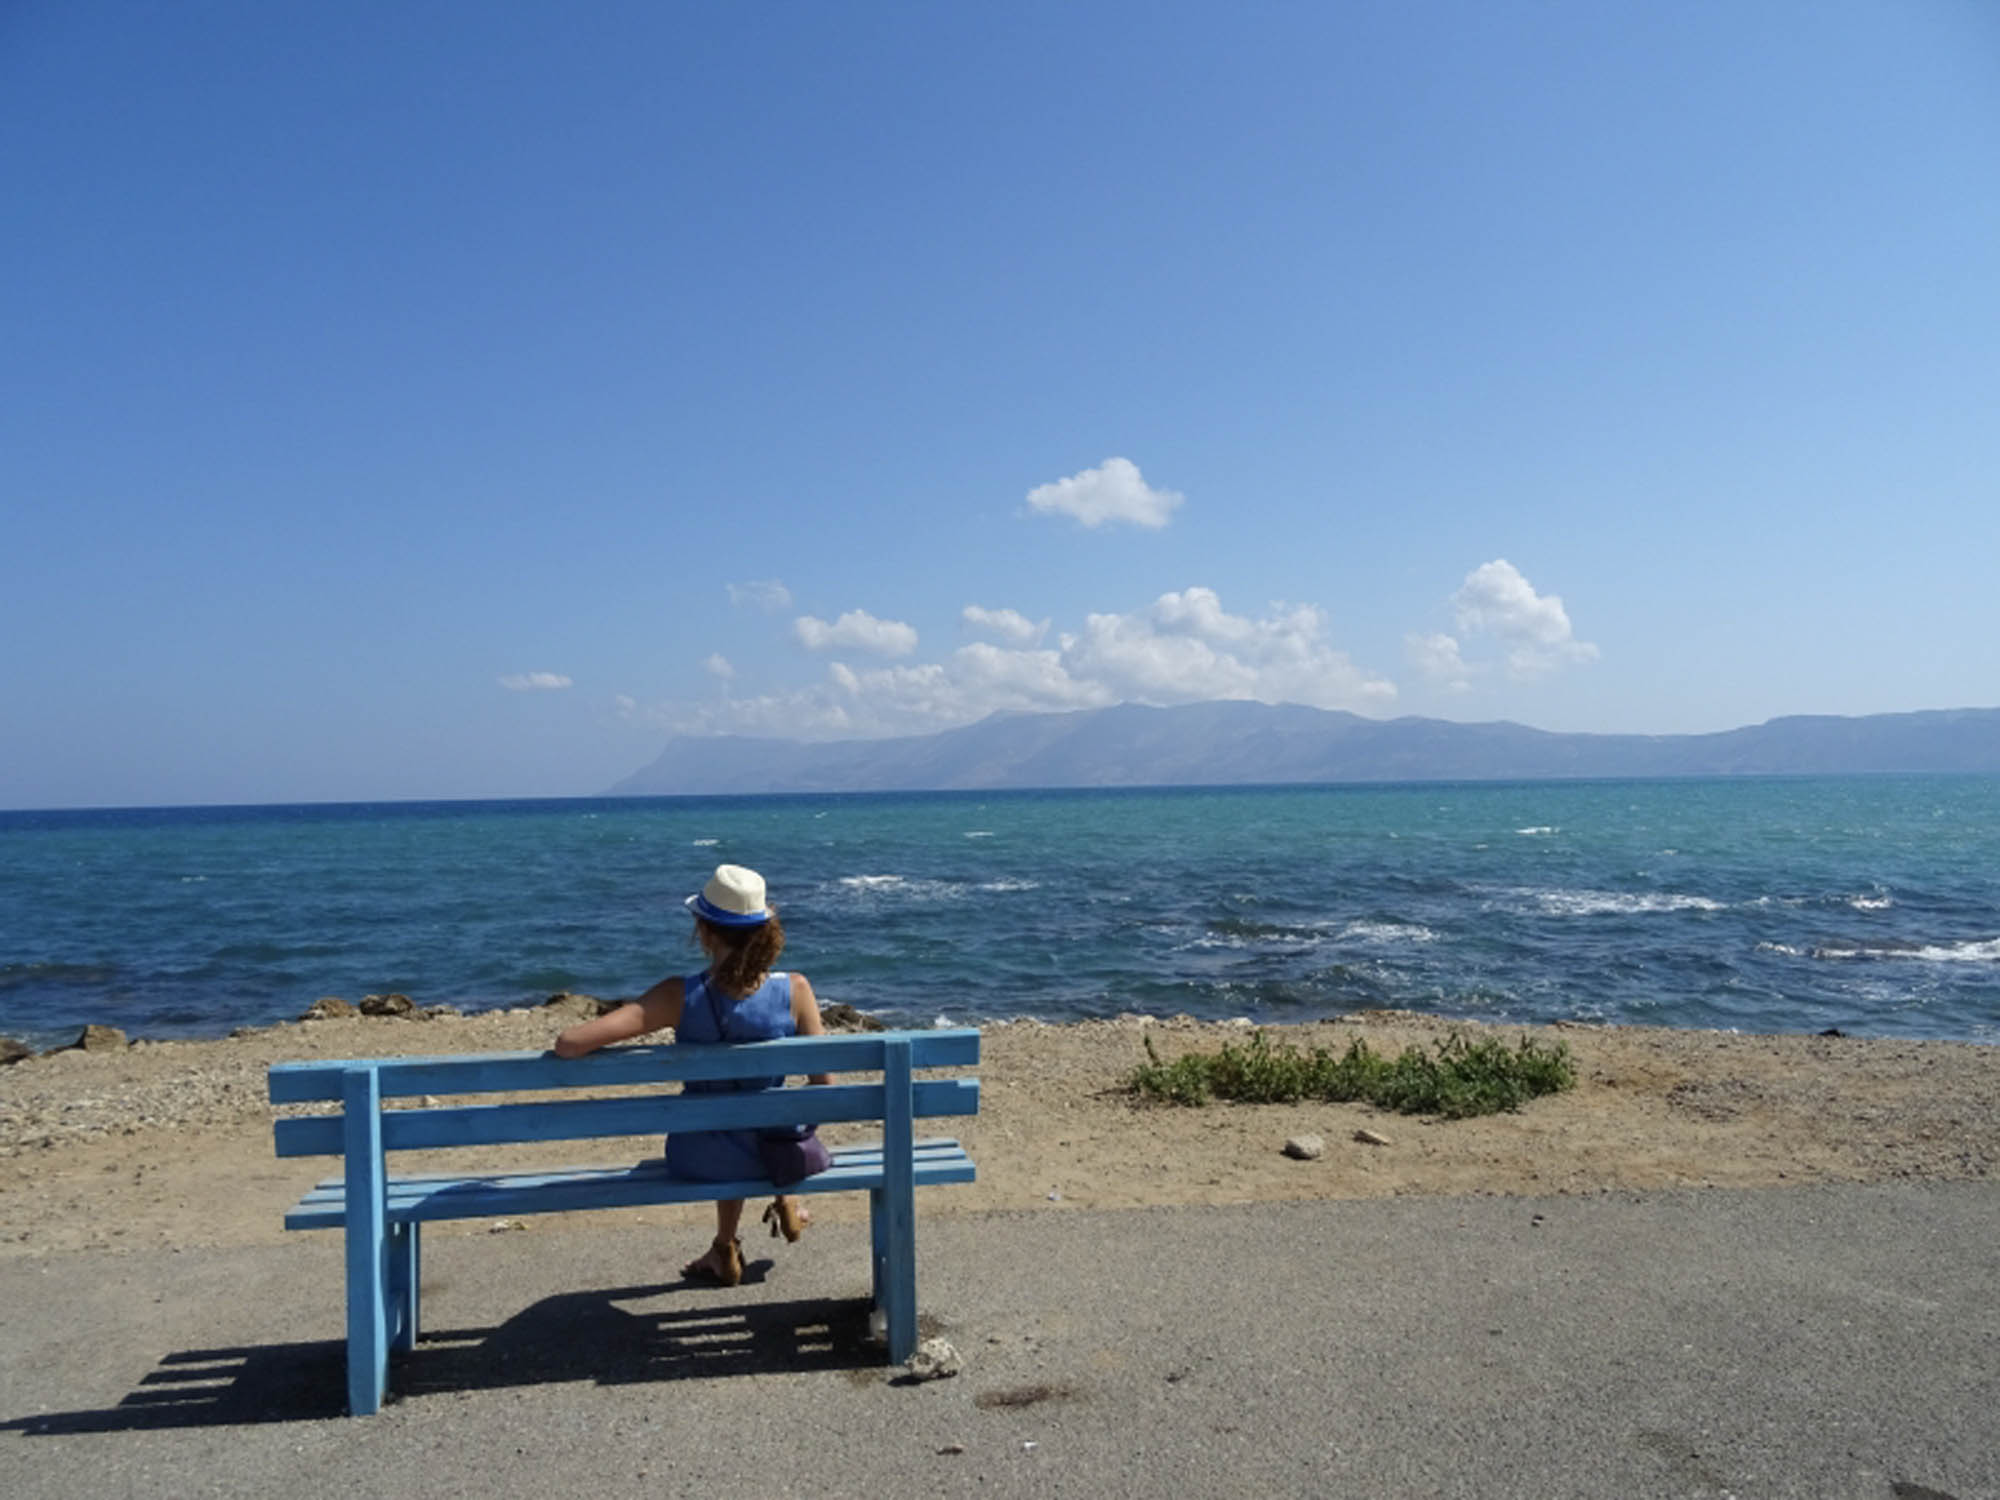 dziewczyna na ławce, appatrzy w dal na morze, grecja